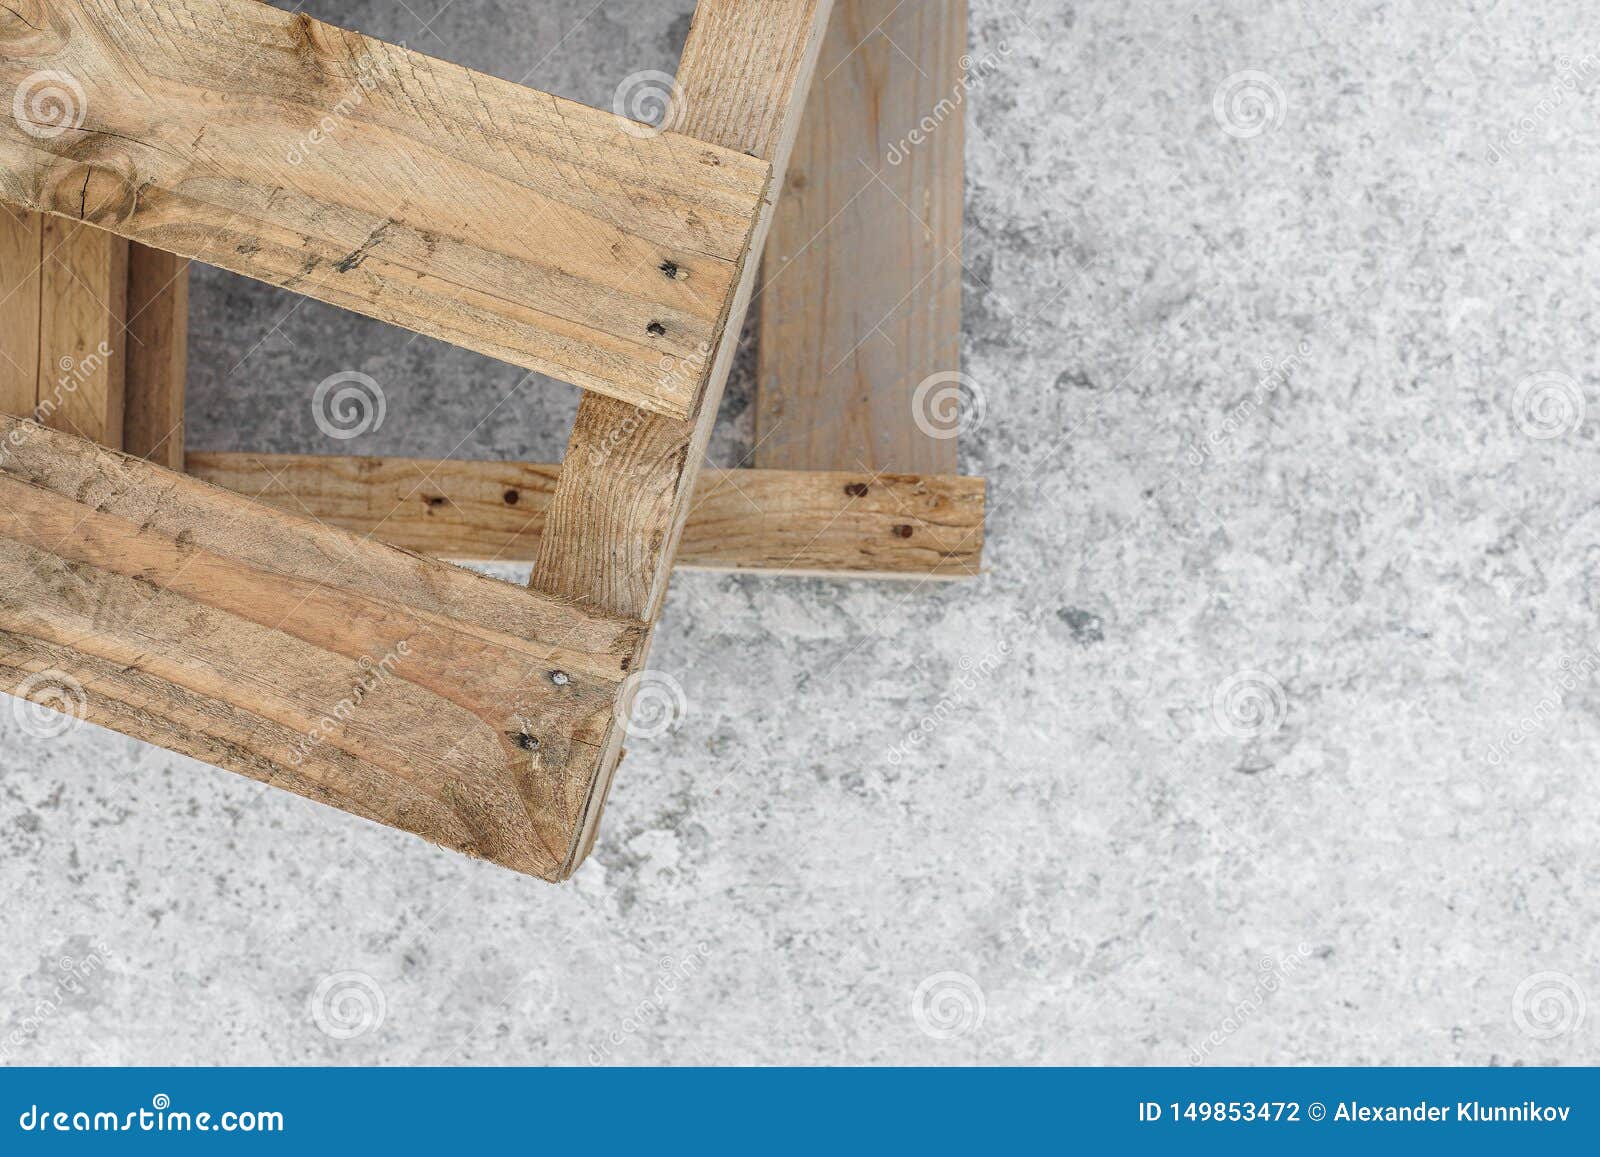 Wooden Pallets Stand On A Concrete Pier Copy Space Texture Blur